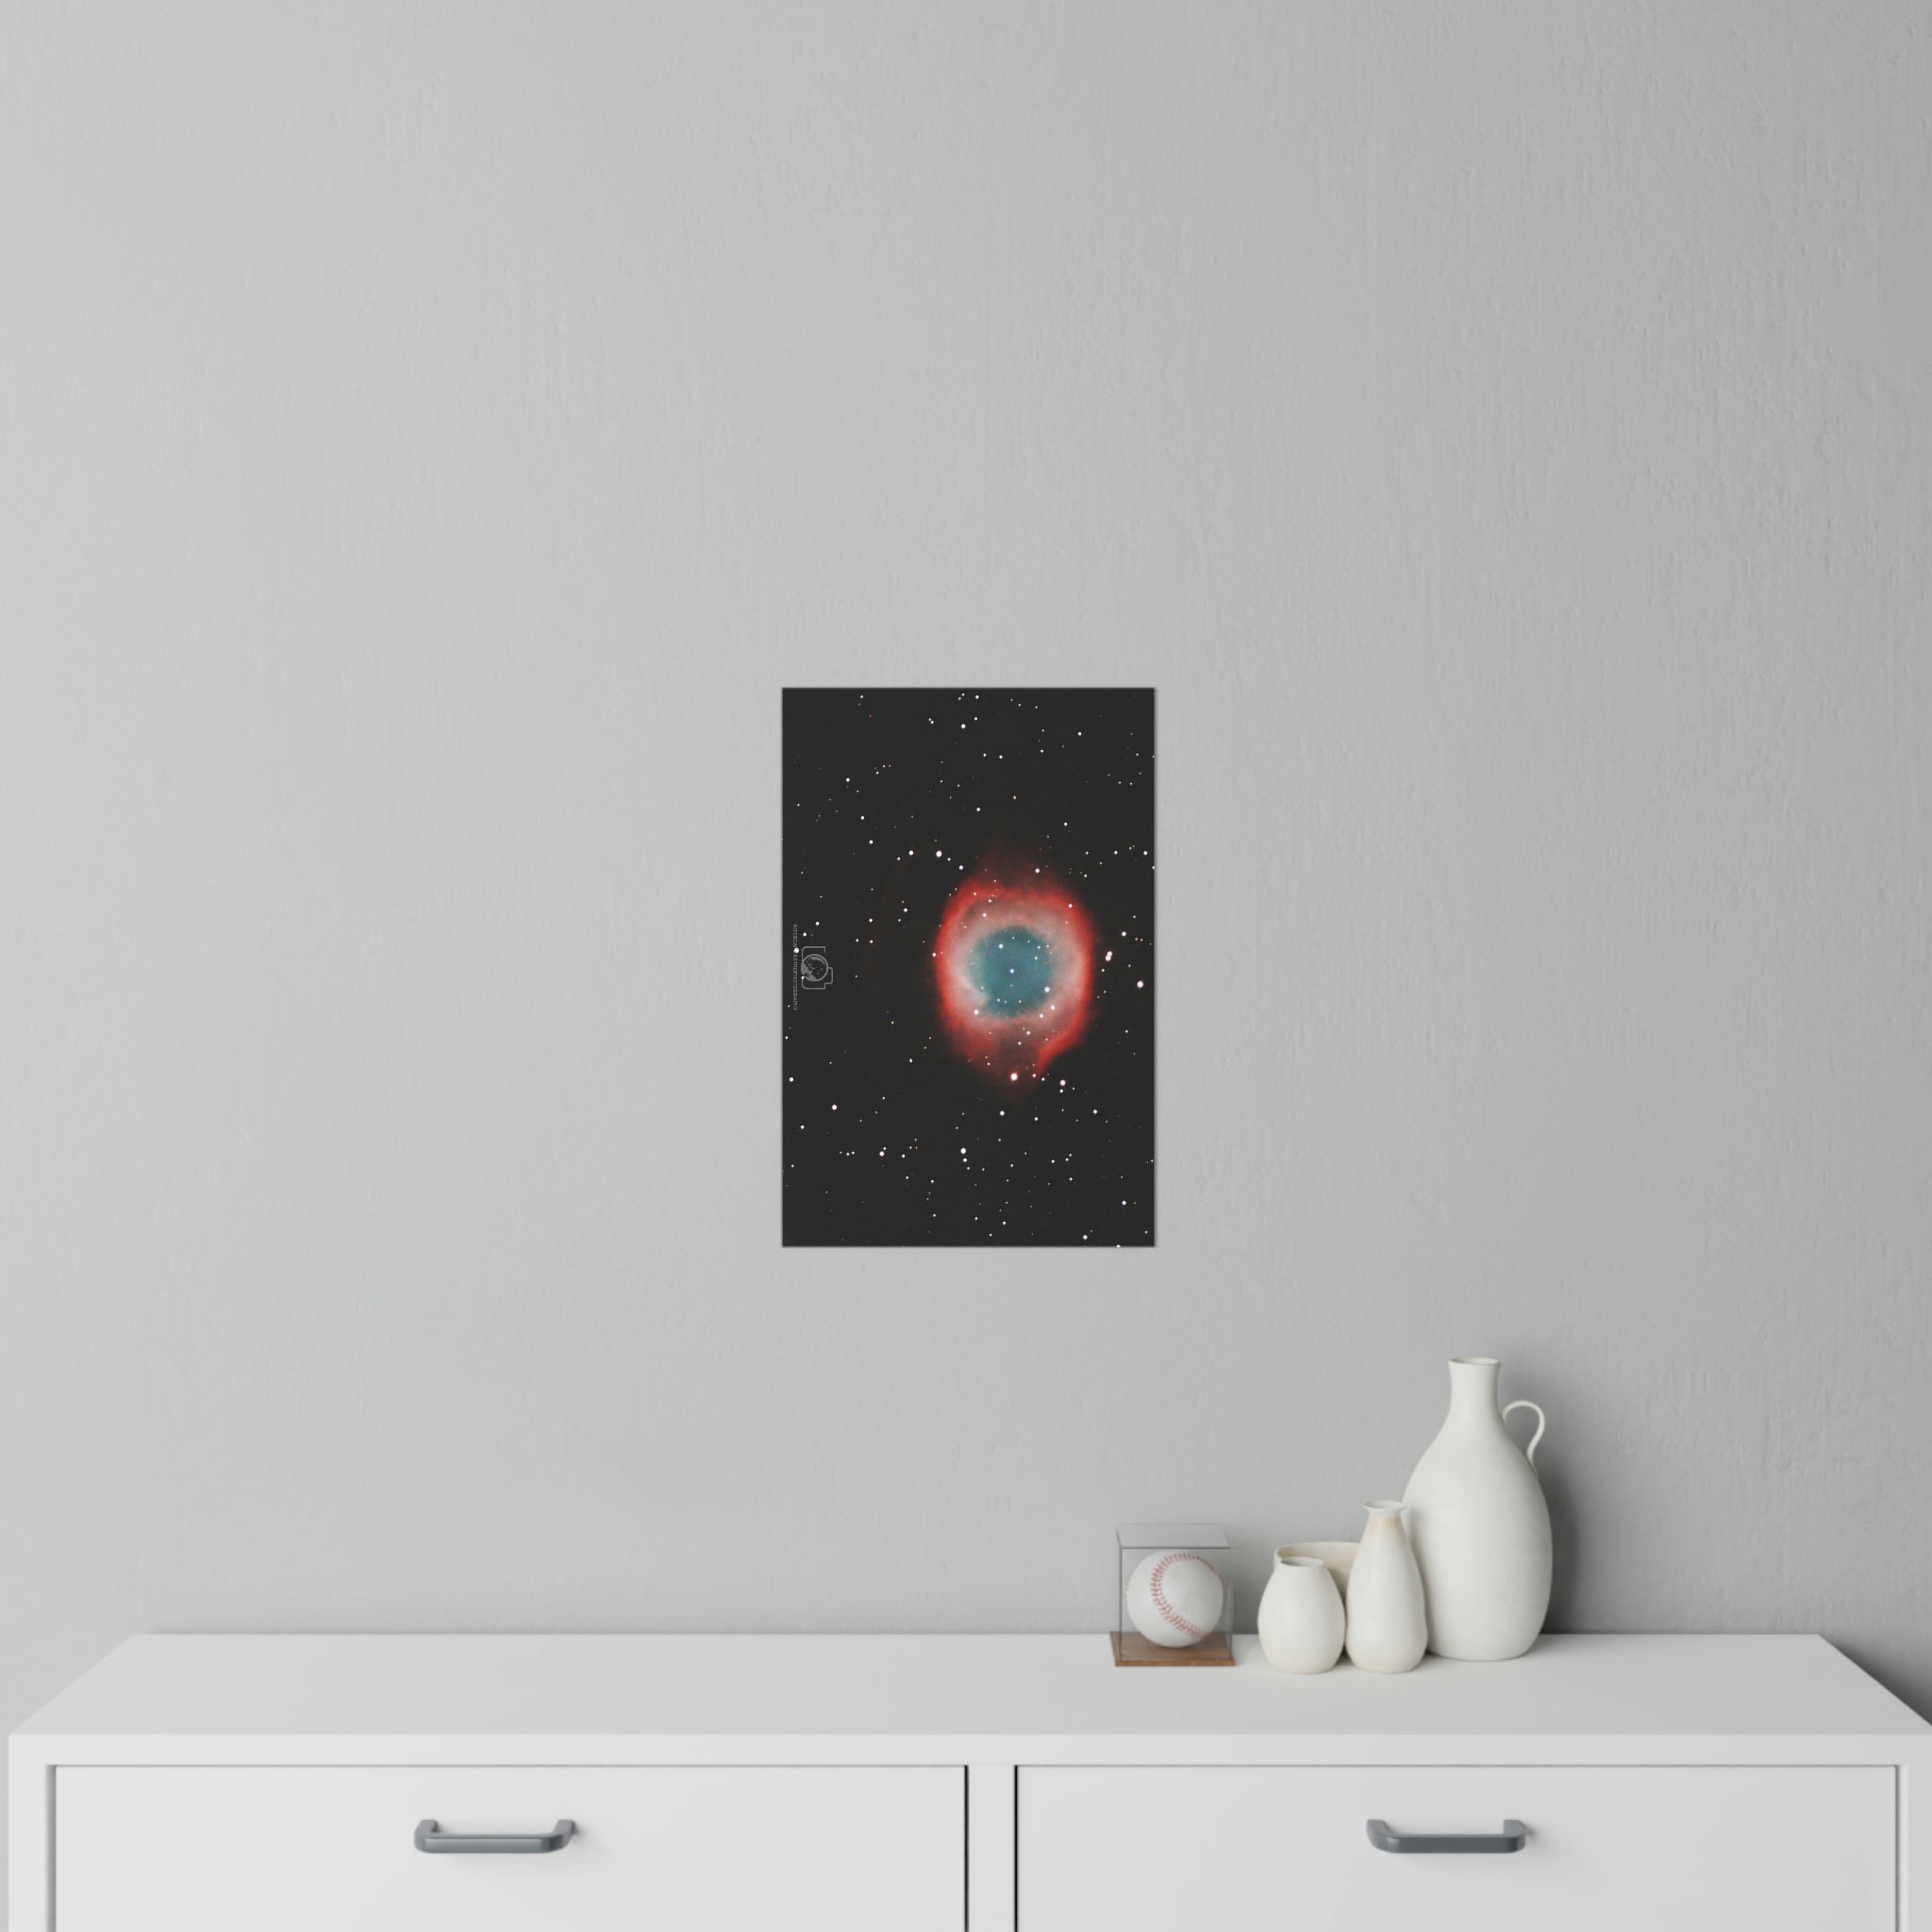 Wall Decals: Helix (Eye of God) Nebula